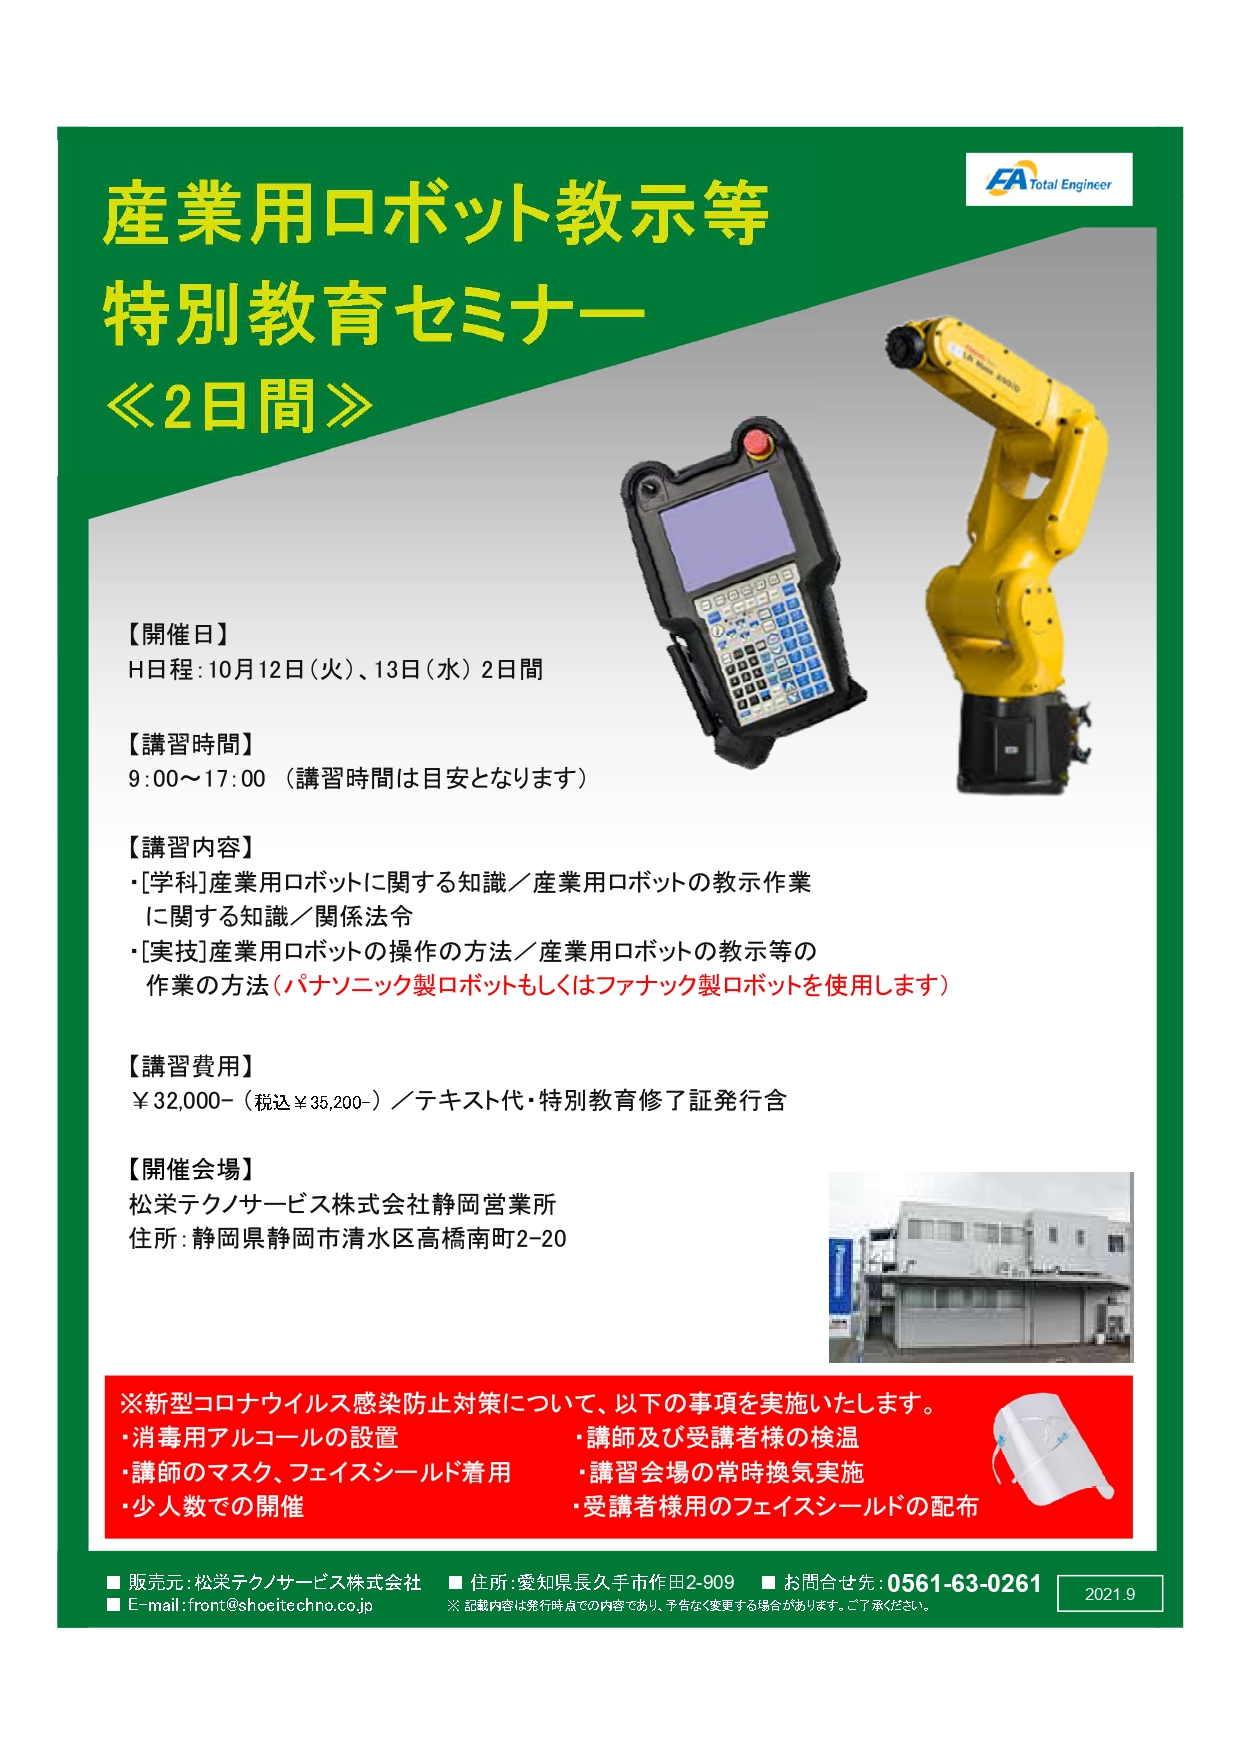 【終了しました】産業用ロボット特別教育（教示等）静岡会場開催のお知らせ【2021年10月】